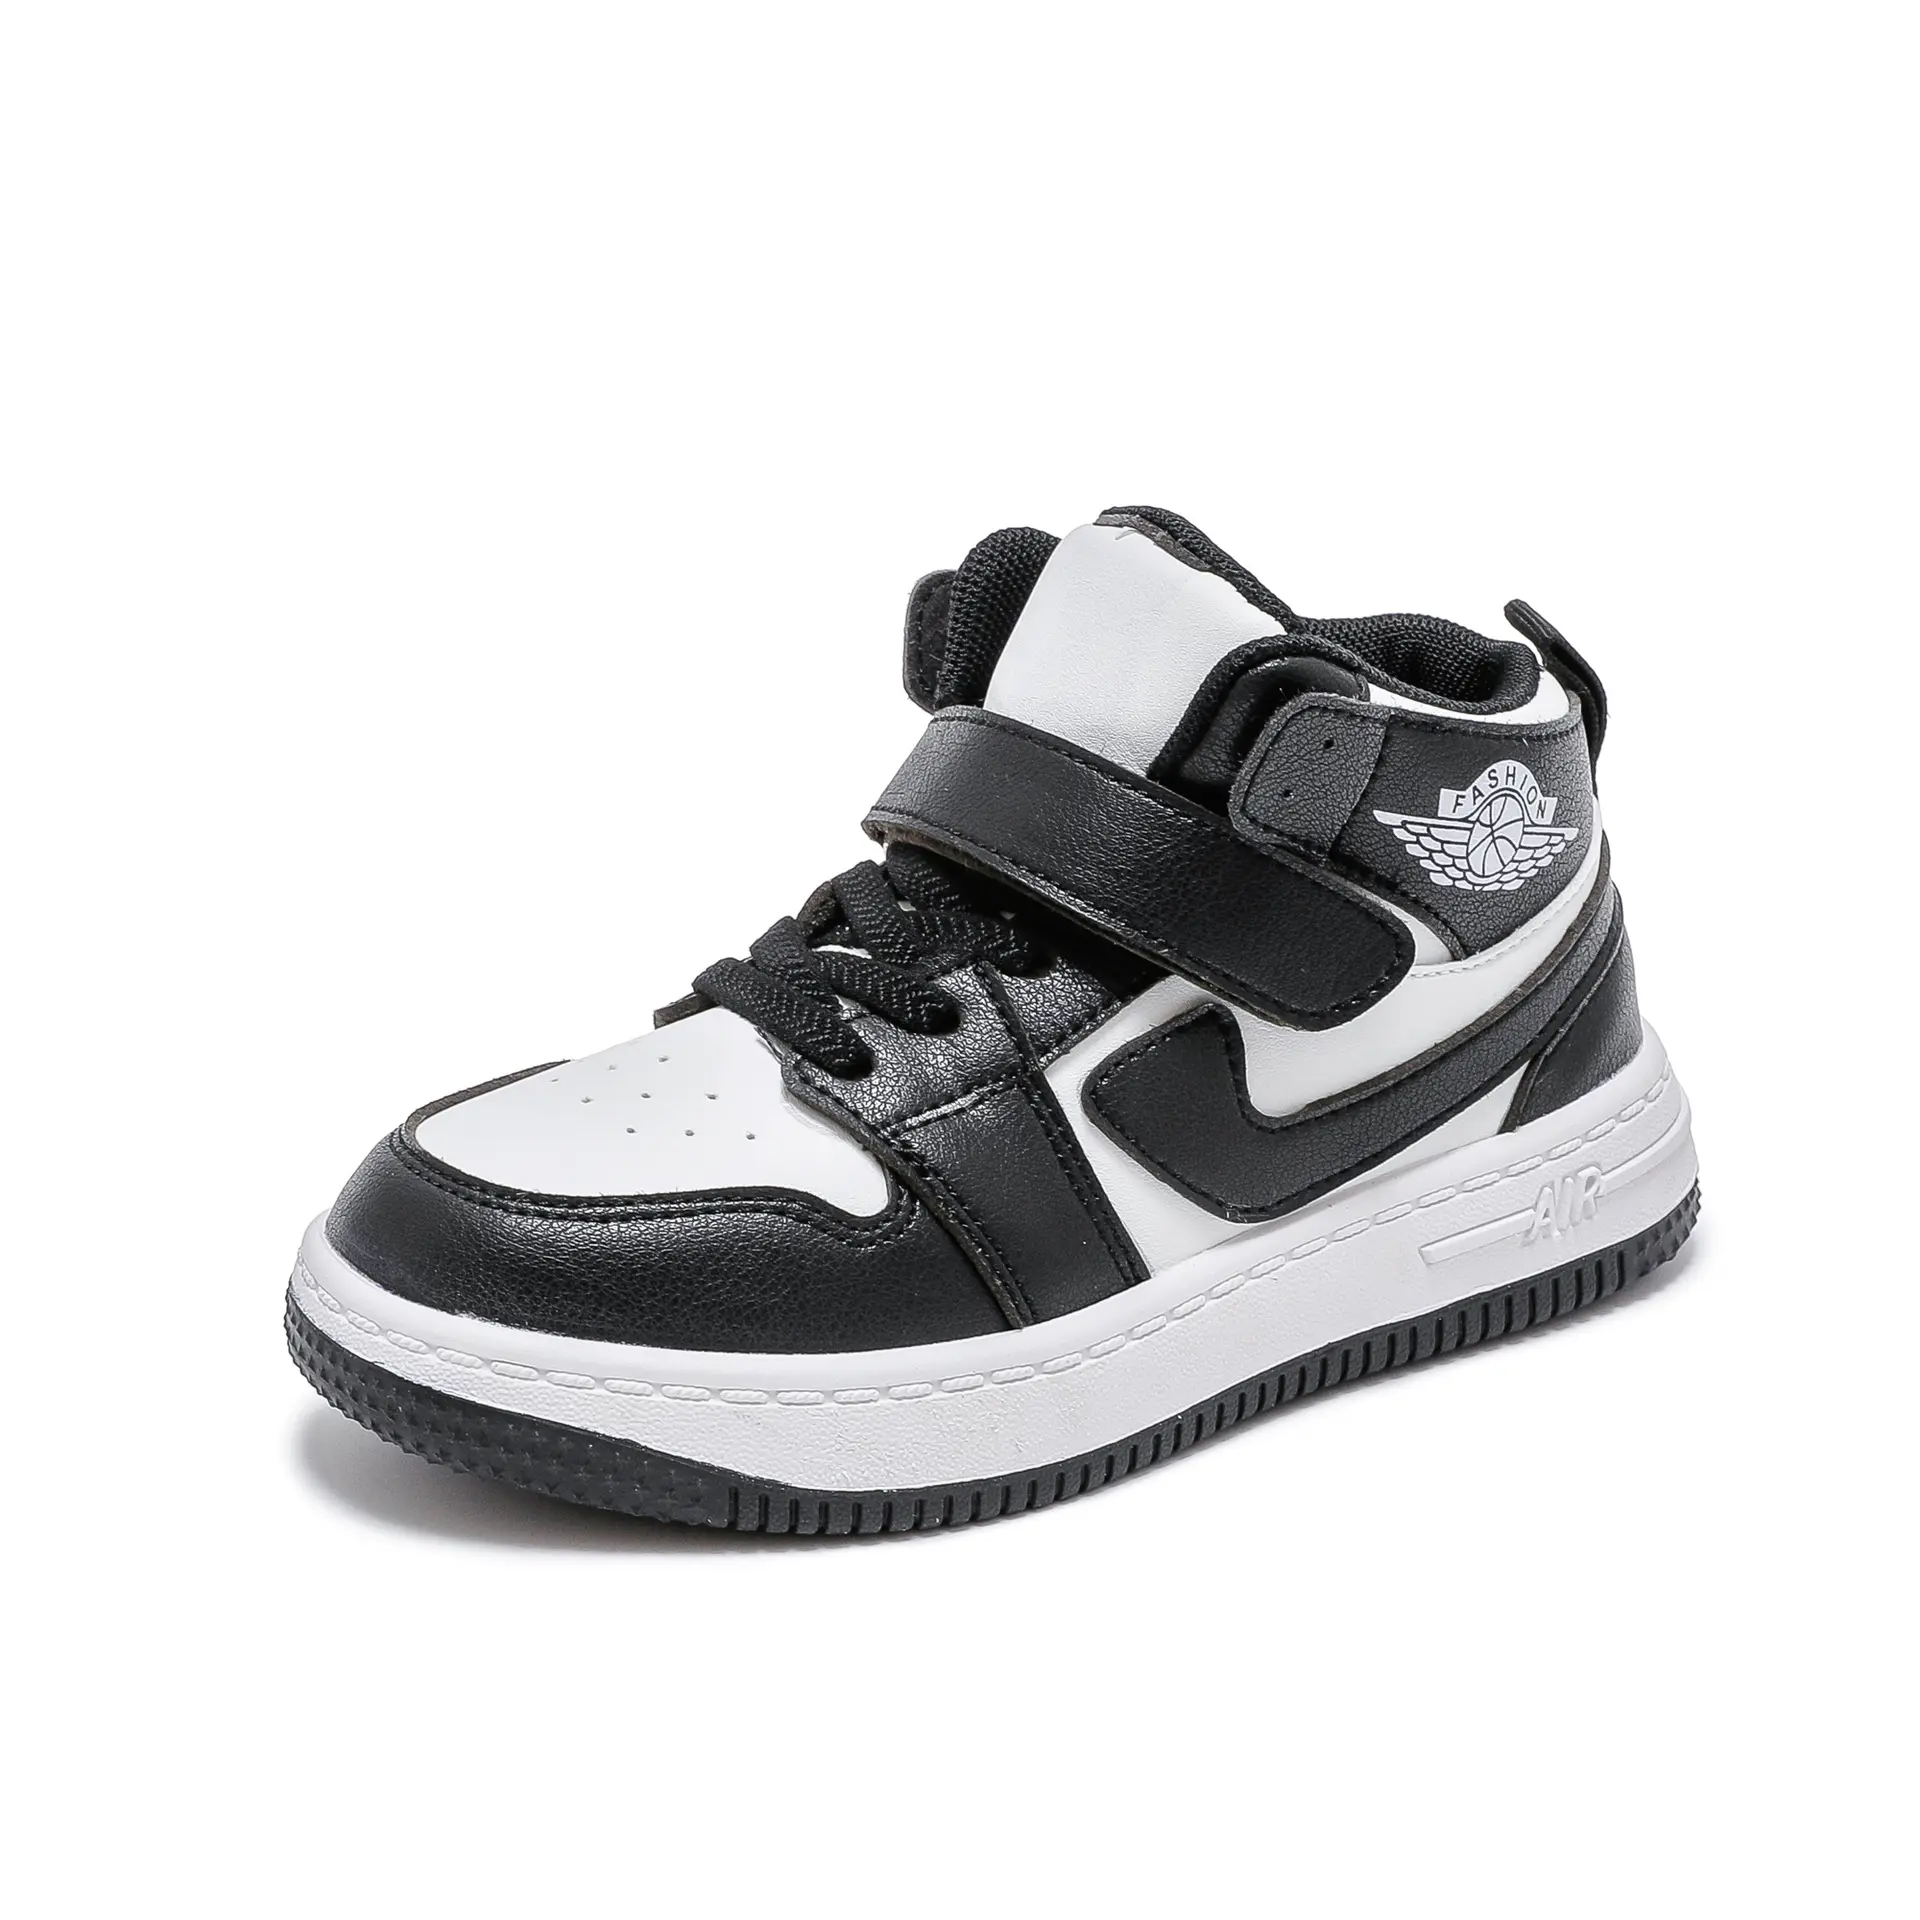 Toptan deri yüksek üst tasarımcı Sneaker çocuk okul günlük yaşam için yürüyüş ayakkabısı erkek rahat spor ayakkabılar